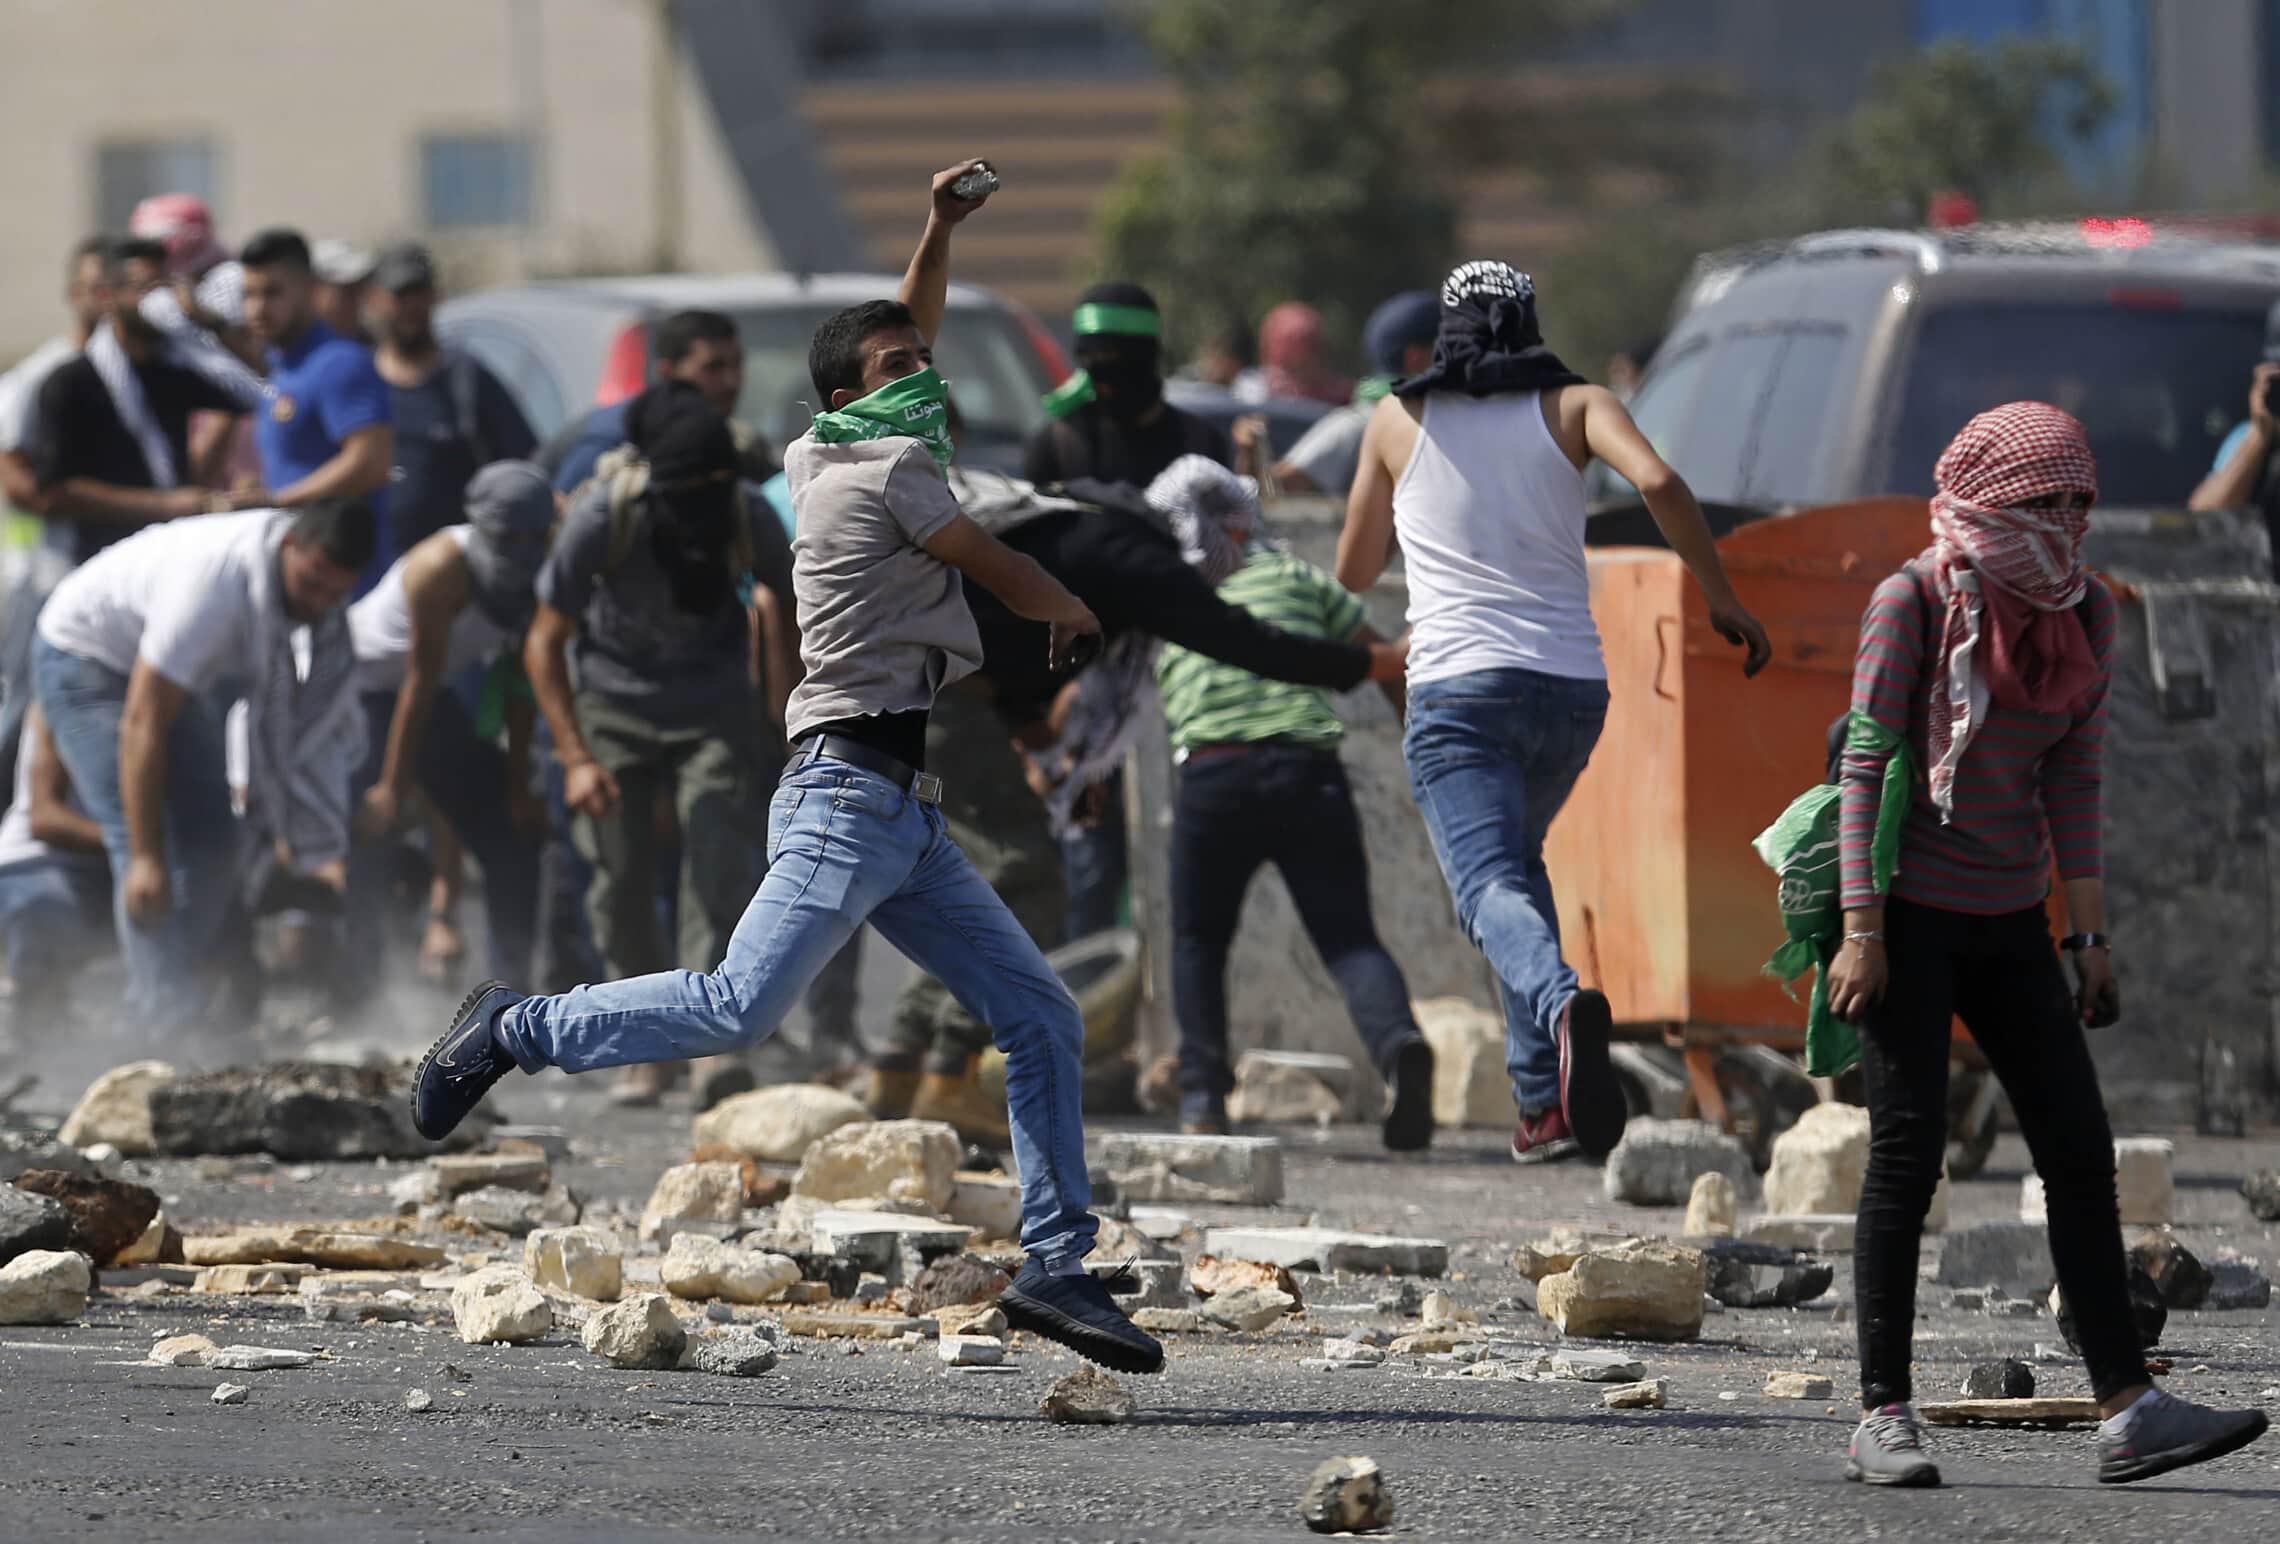 סטודנטים תומכי חמאס באוניברסטית ביר זית מתפרעים בהתנגשות עם כוחות צה"ל בקמפוס (ארכיון) (צילום: AP Photo/Majdi Mohammed)